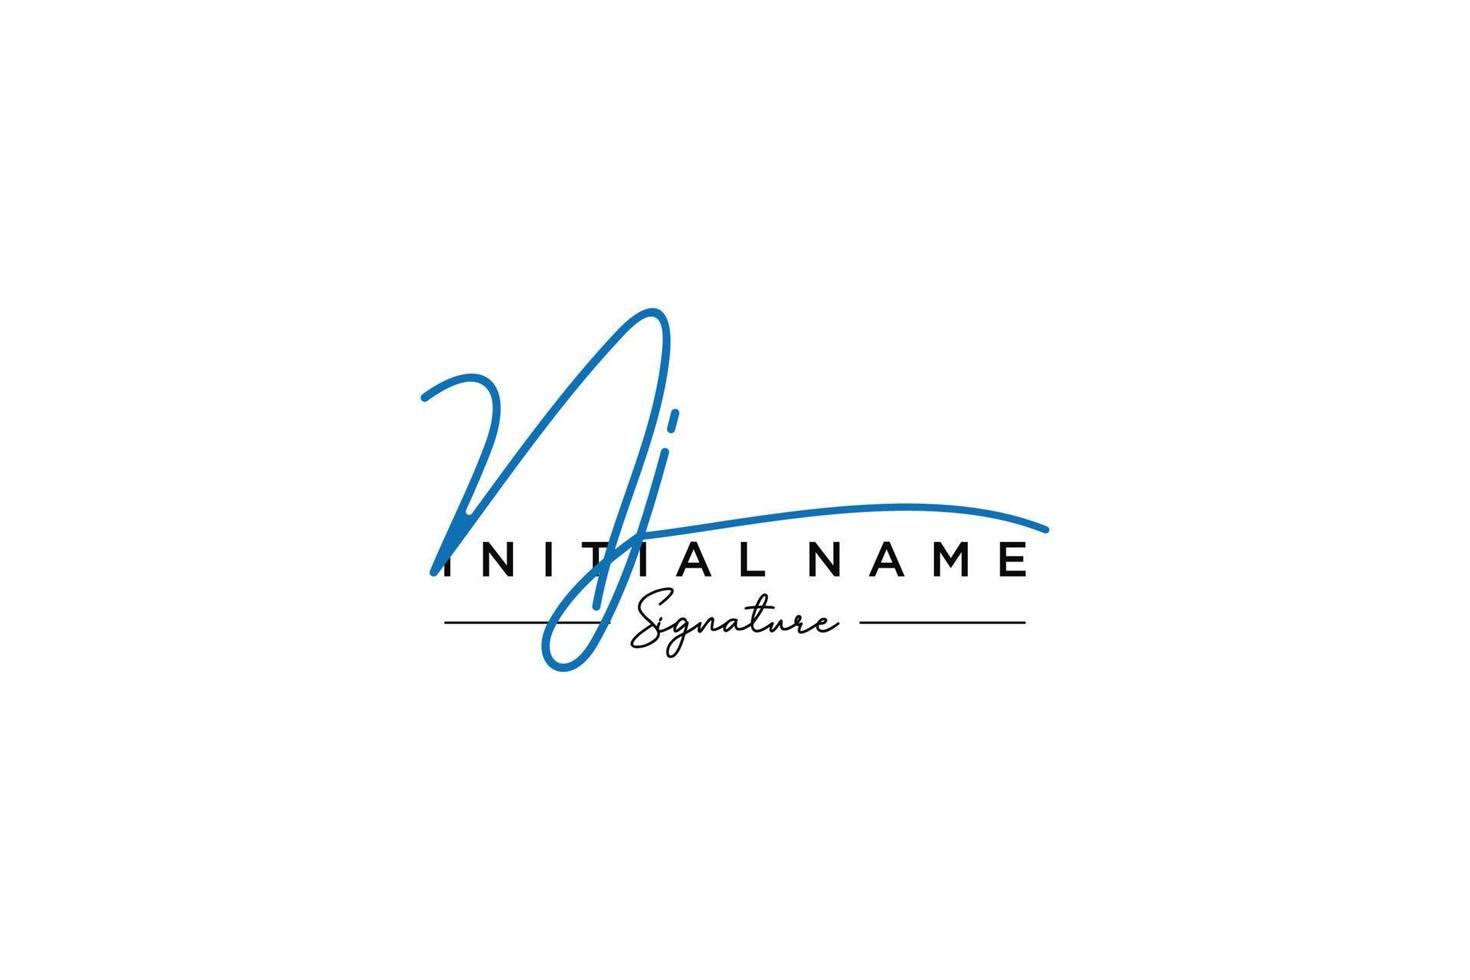 vector de plantilla de logotipo de firma inicial de nj. ilustración de vector de letras de caligrafía dibujada a mano.